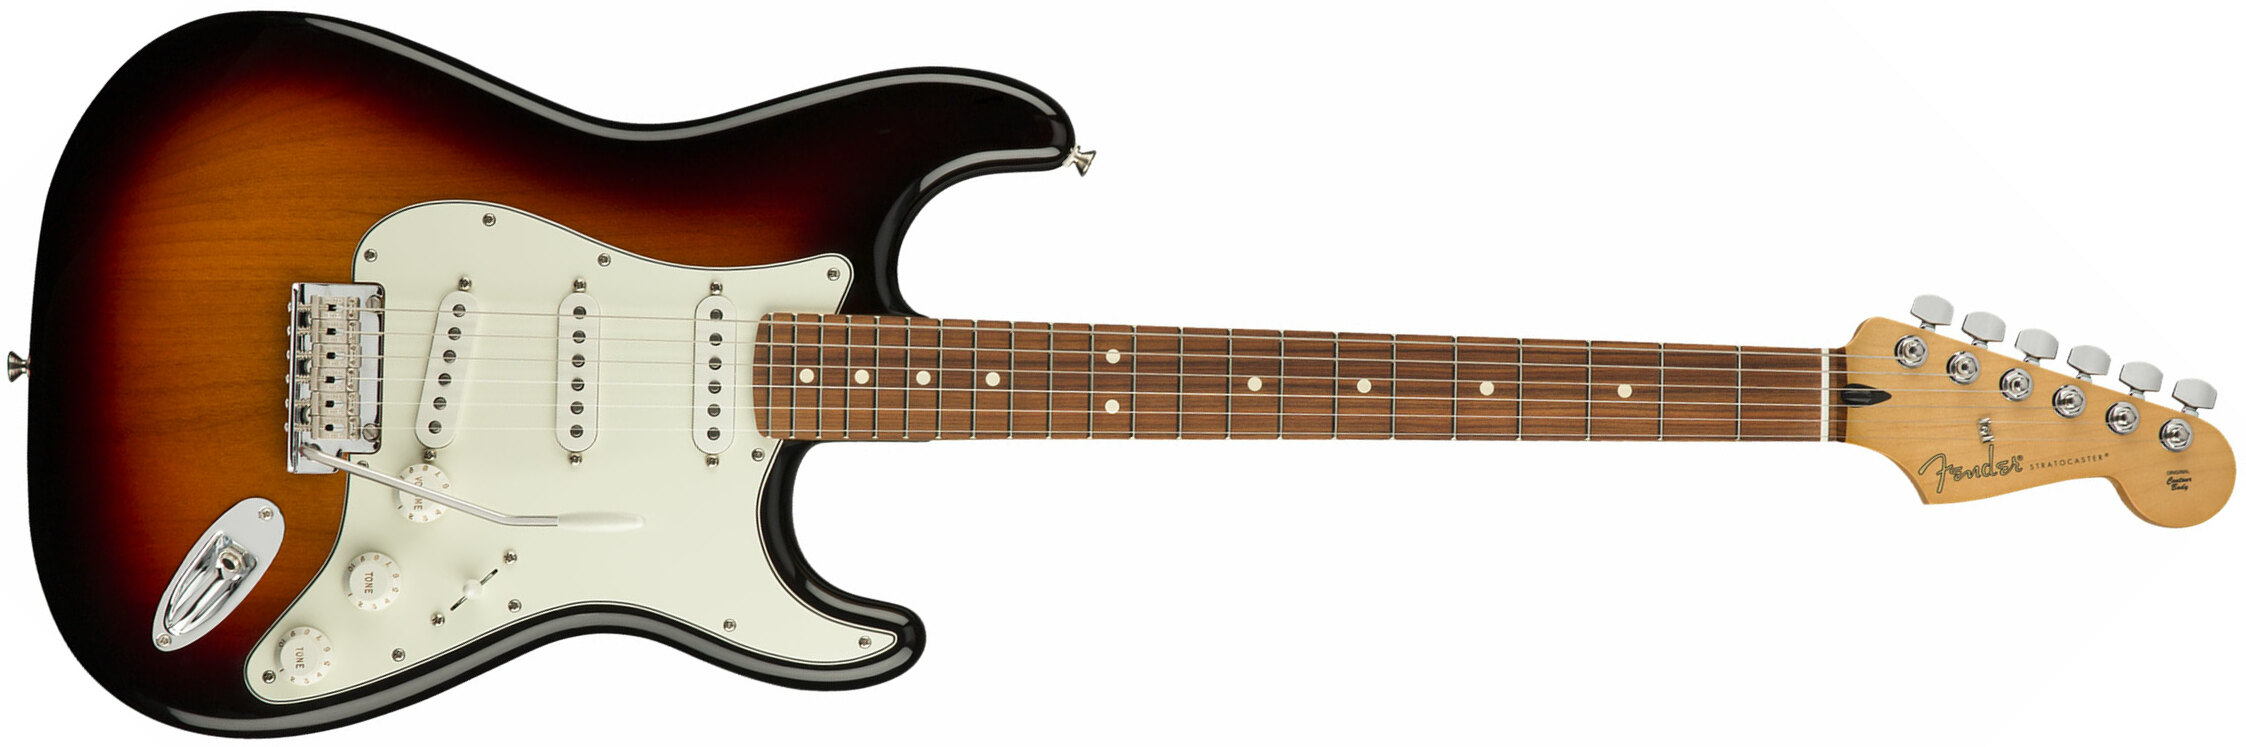 Fender Strat Player Mex Sss Pf - 3-color Sunburst - Guitare Électrique Forme Str - Main picture